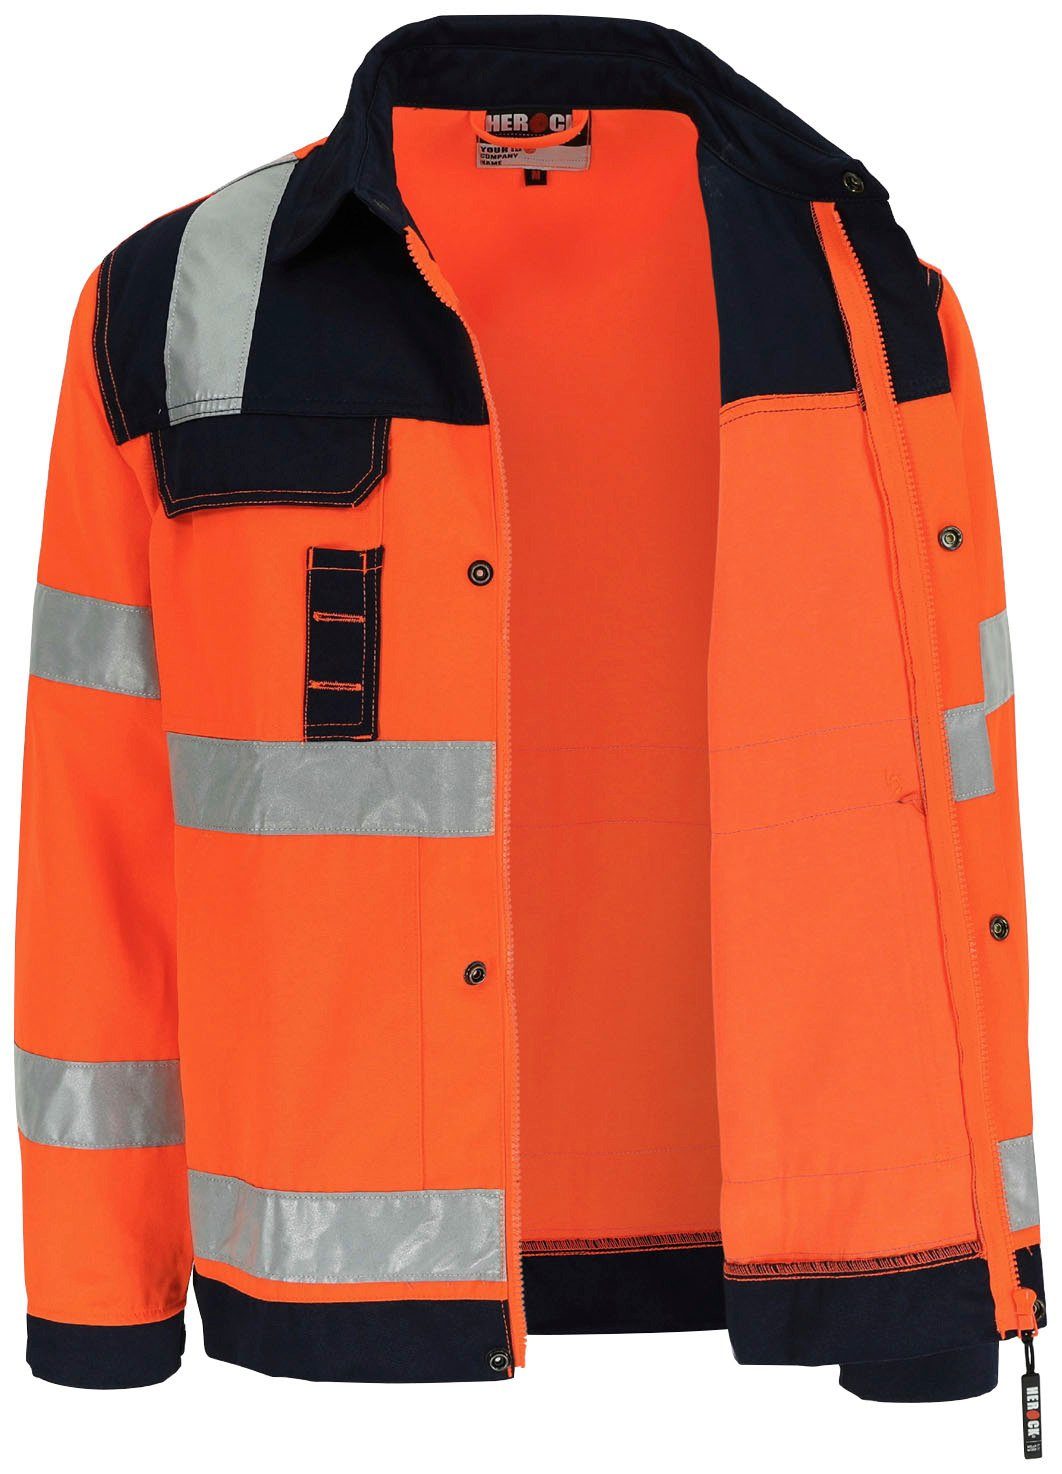 Herock Arbeitsjacke eintellbare Taschen, Hochwertig, orange 5cm Bündchen, reflektierende Jacke Hydros Bänder Hochsichtbar 5